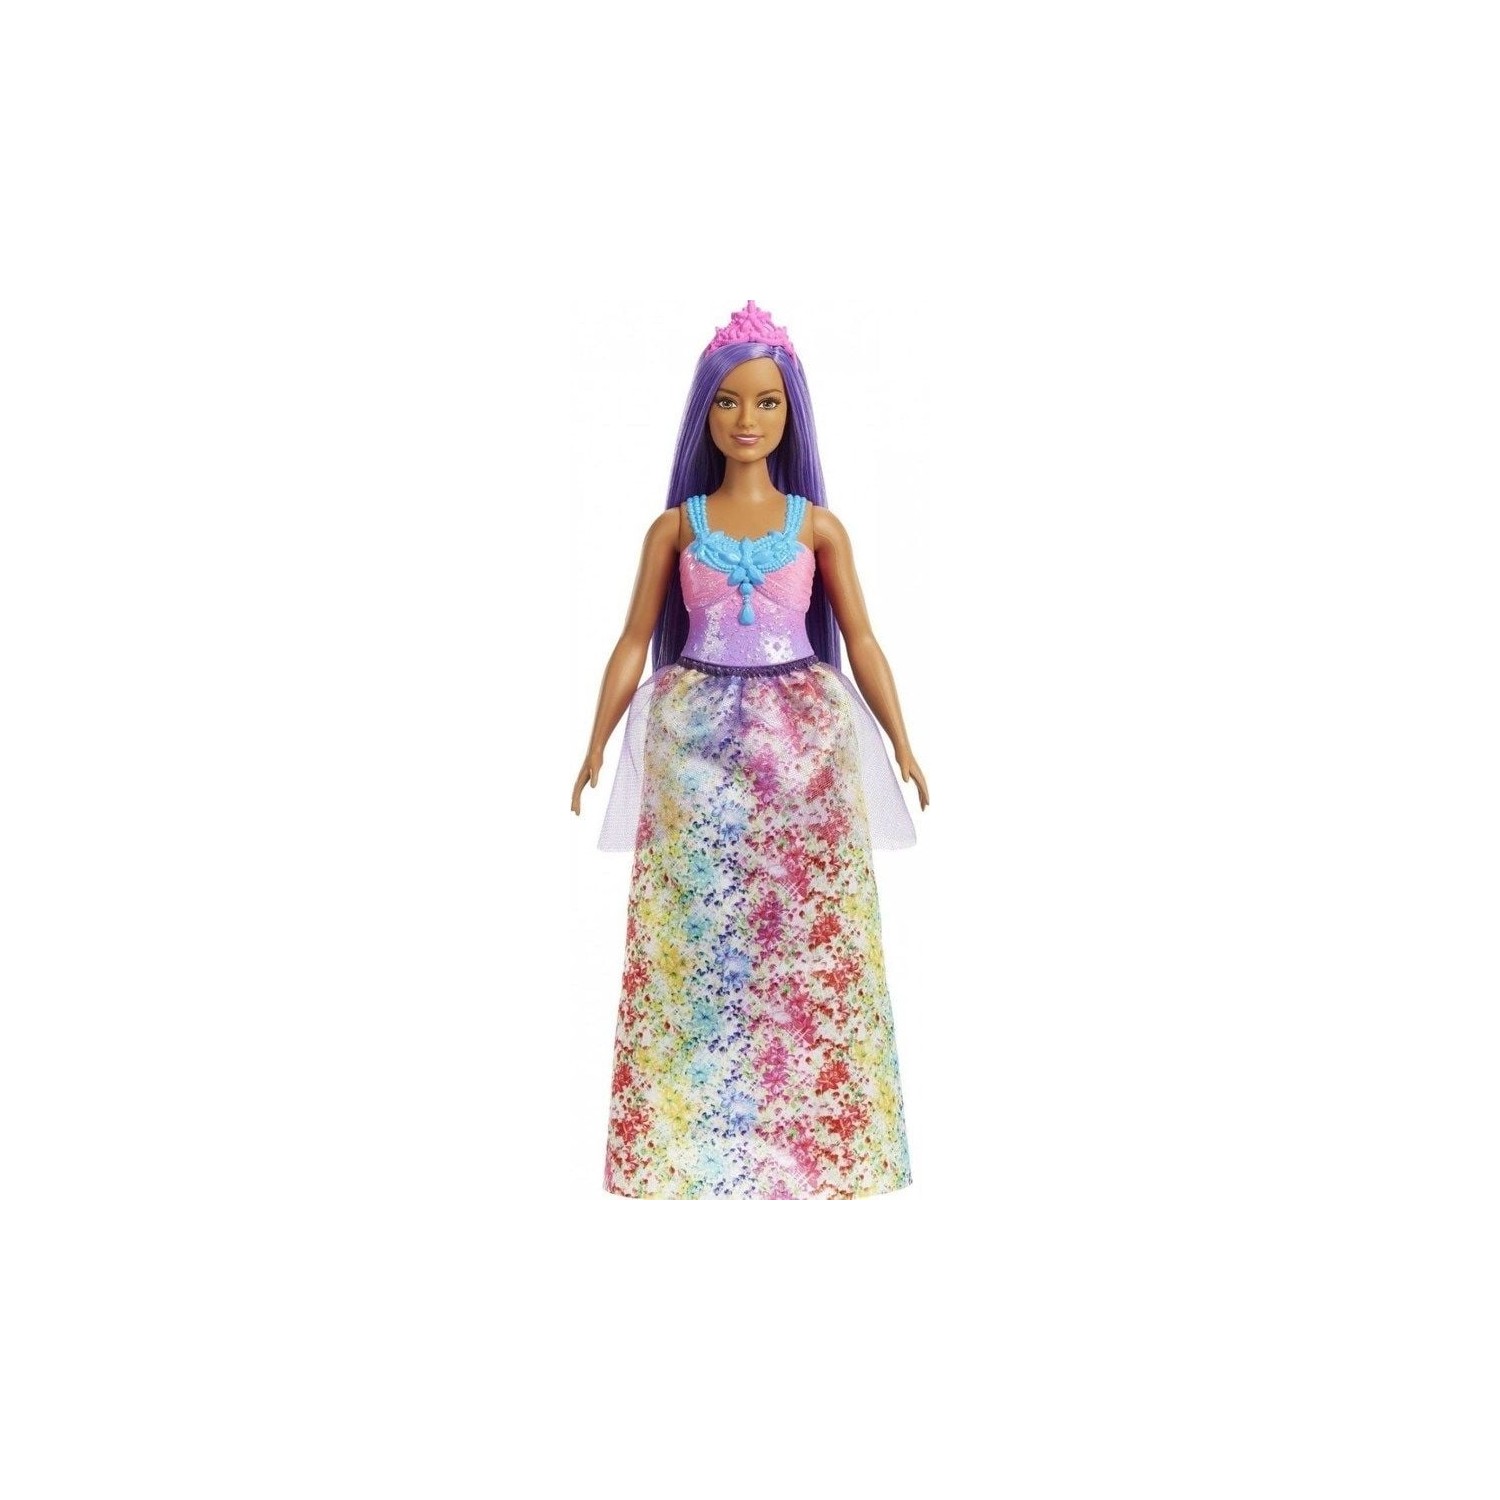 Кукла Barbie Dreamtopia Princess Dolls HGR16 куклы barbie dreamtopia fairy dolls красочное розовое платье фиолетовые волосы gjk00